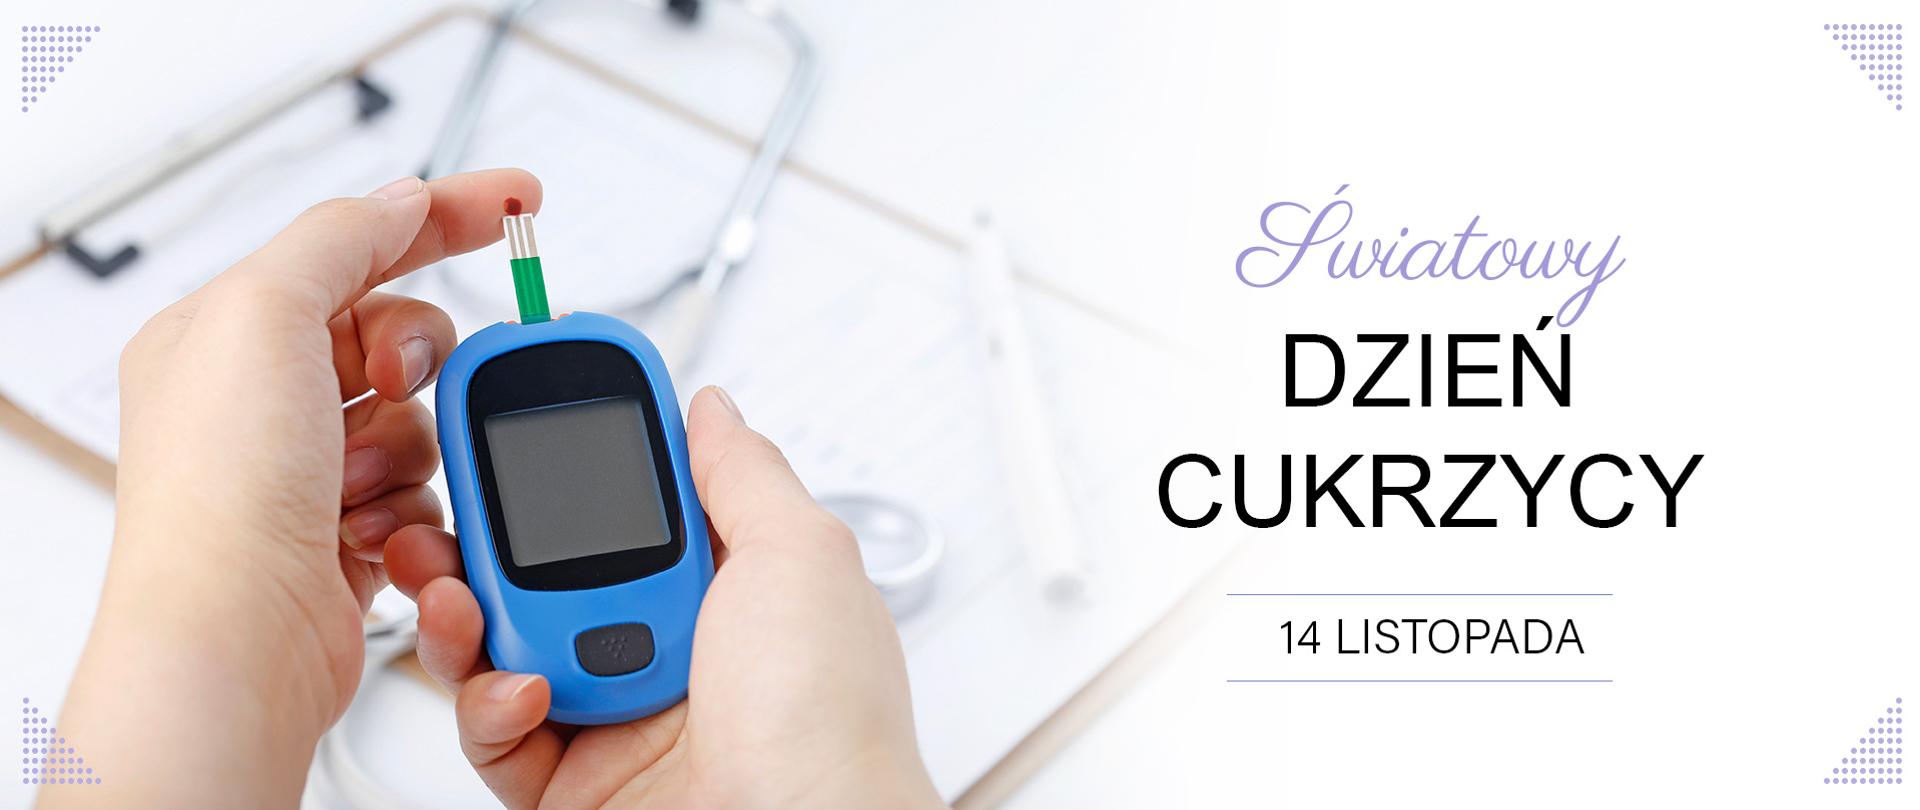 Dłonie trzymające glukometr. Na jednym palcu widoczna kropla krwi dotykająca pasek mierzący poziom cukru. Obok napis: Światowy Dzień Cukrzycy 14 listopada. 